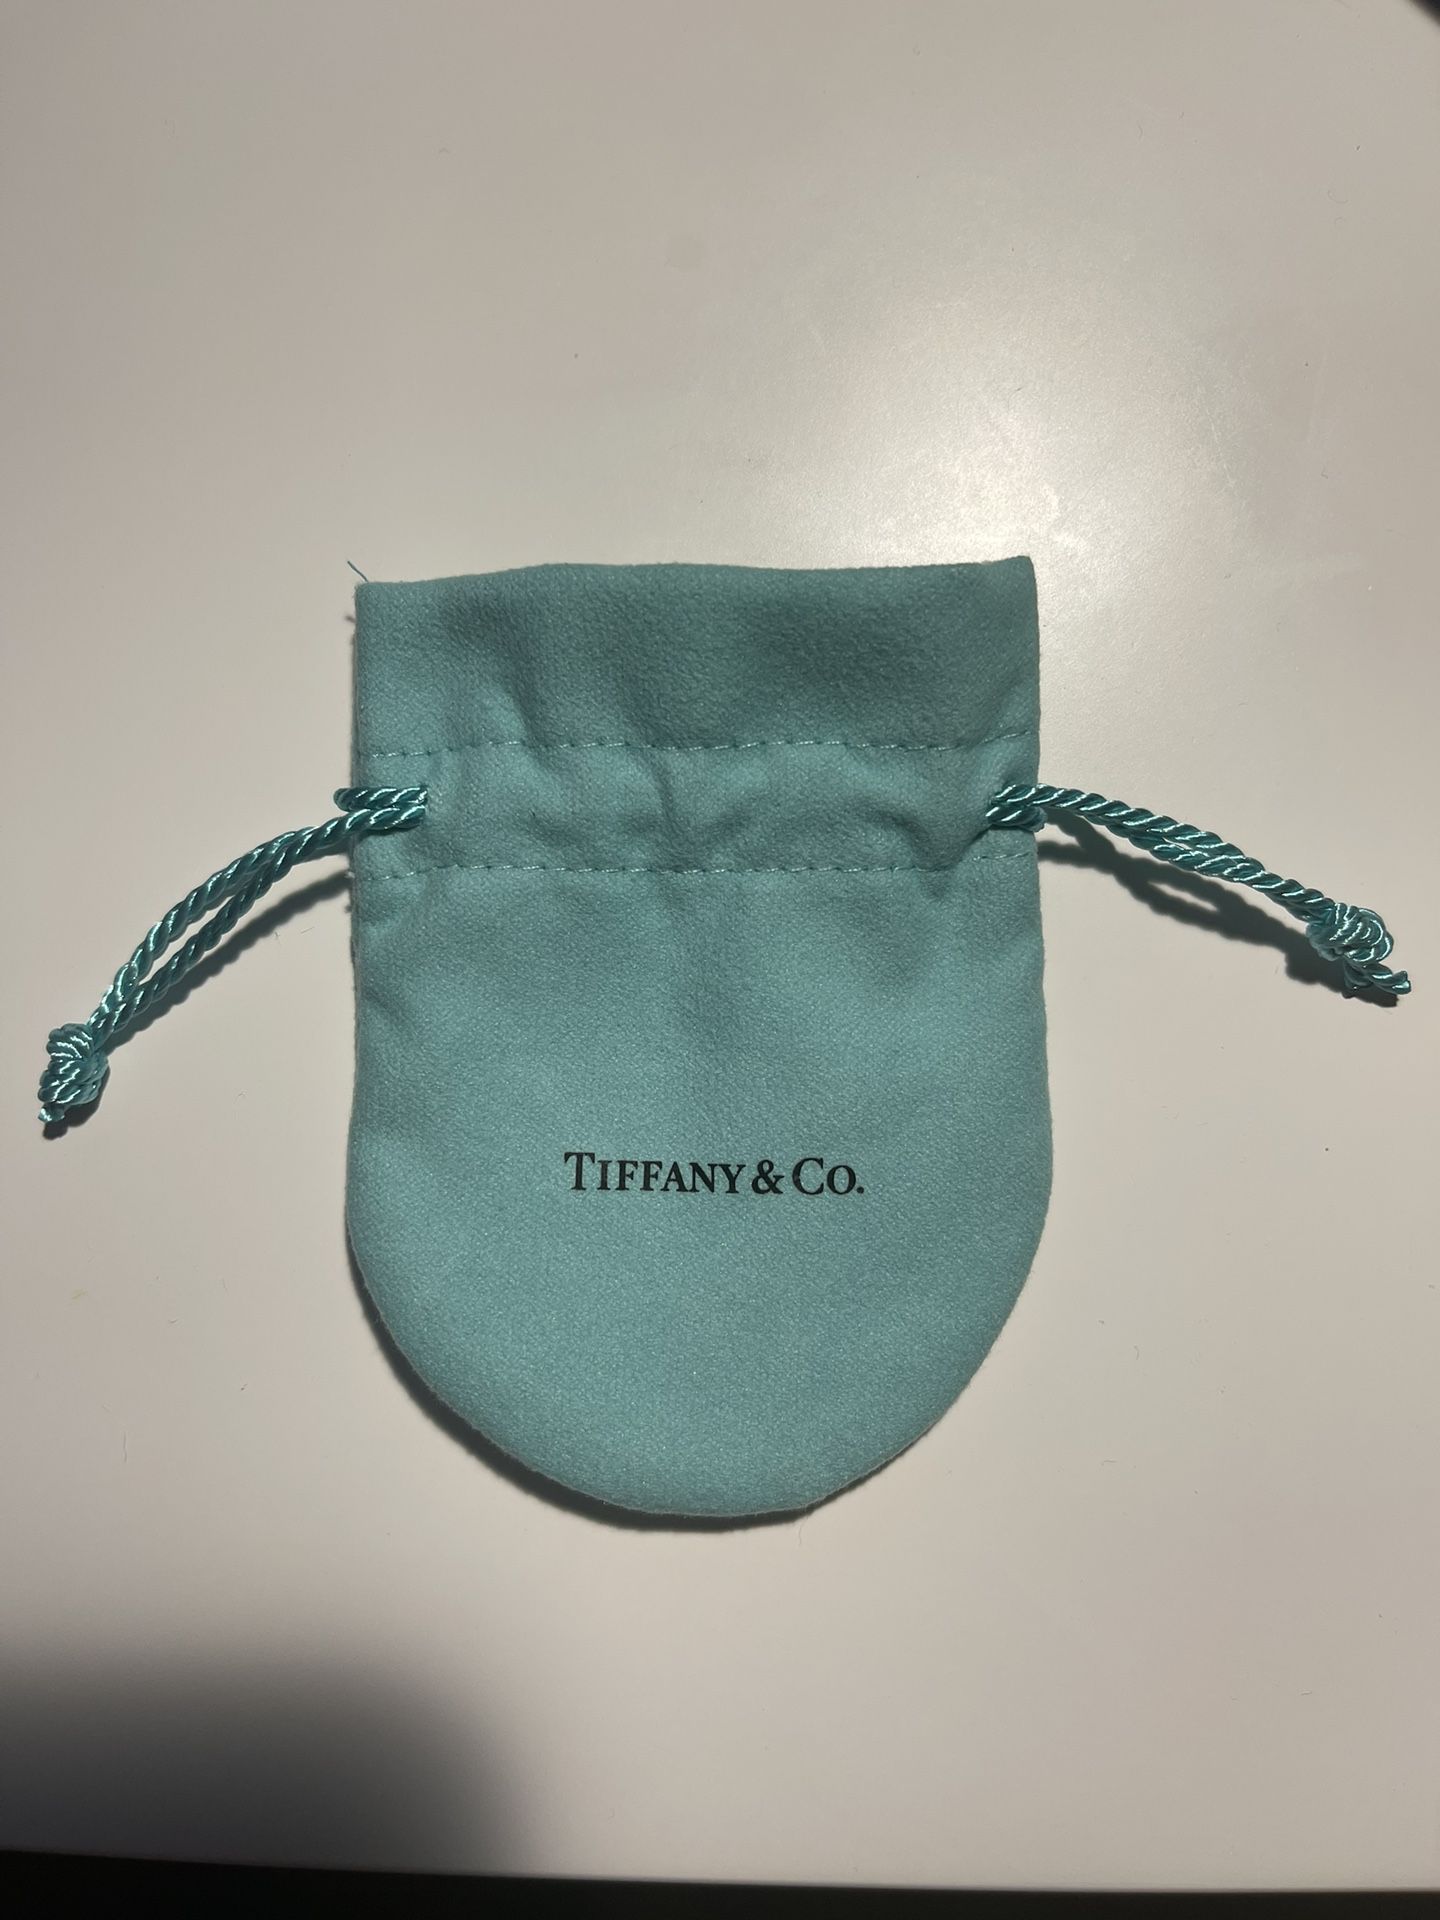 EMPTY Tiffany & Co. Blue Jewelry Pouch Bag 2.75” X 3.5”